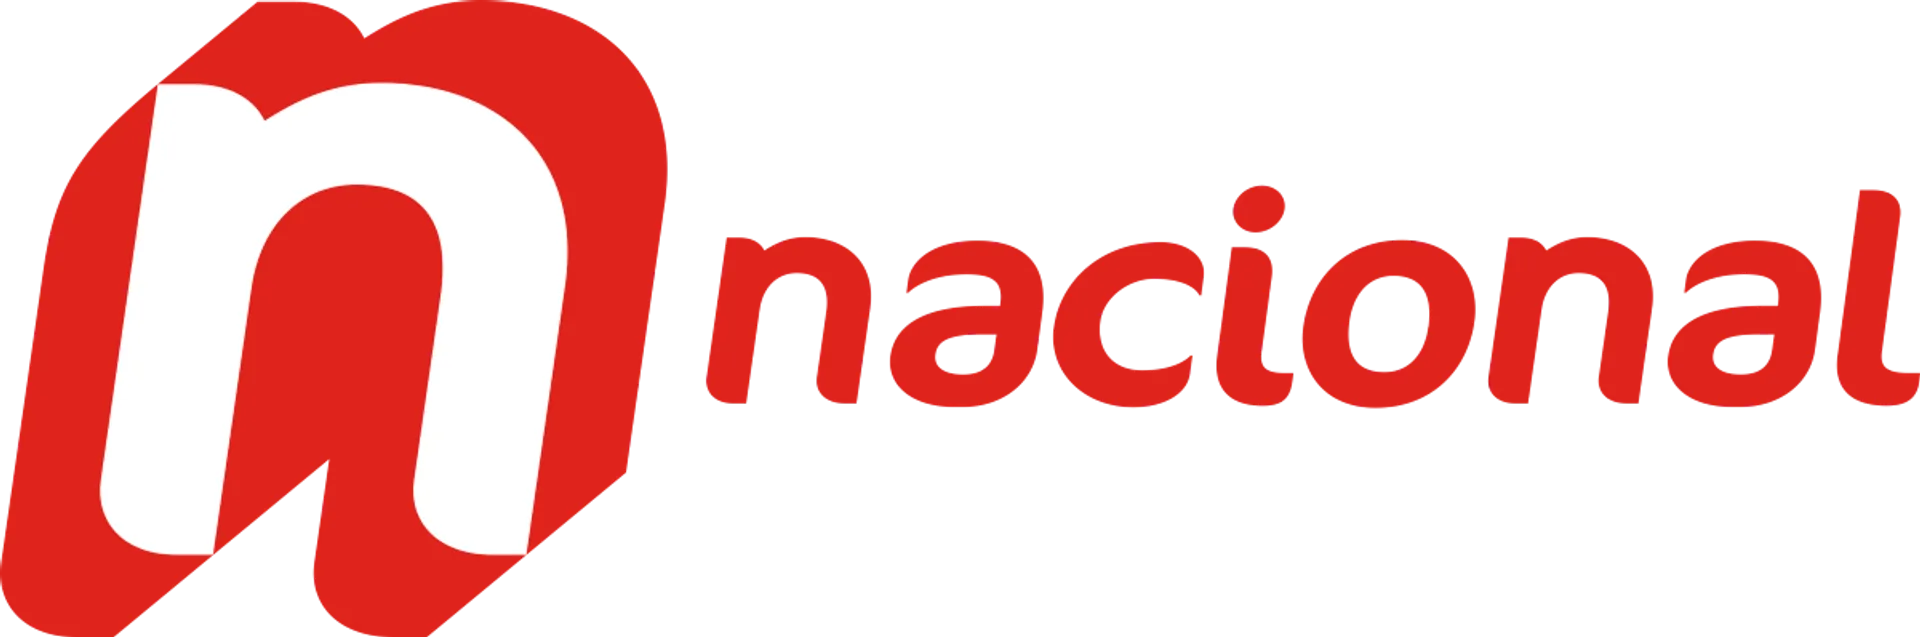 NACIONAL logo